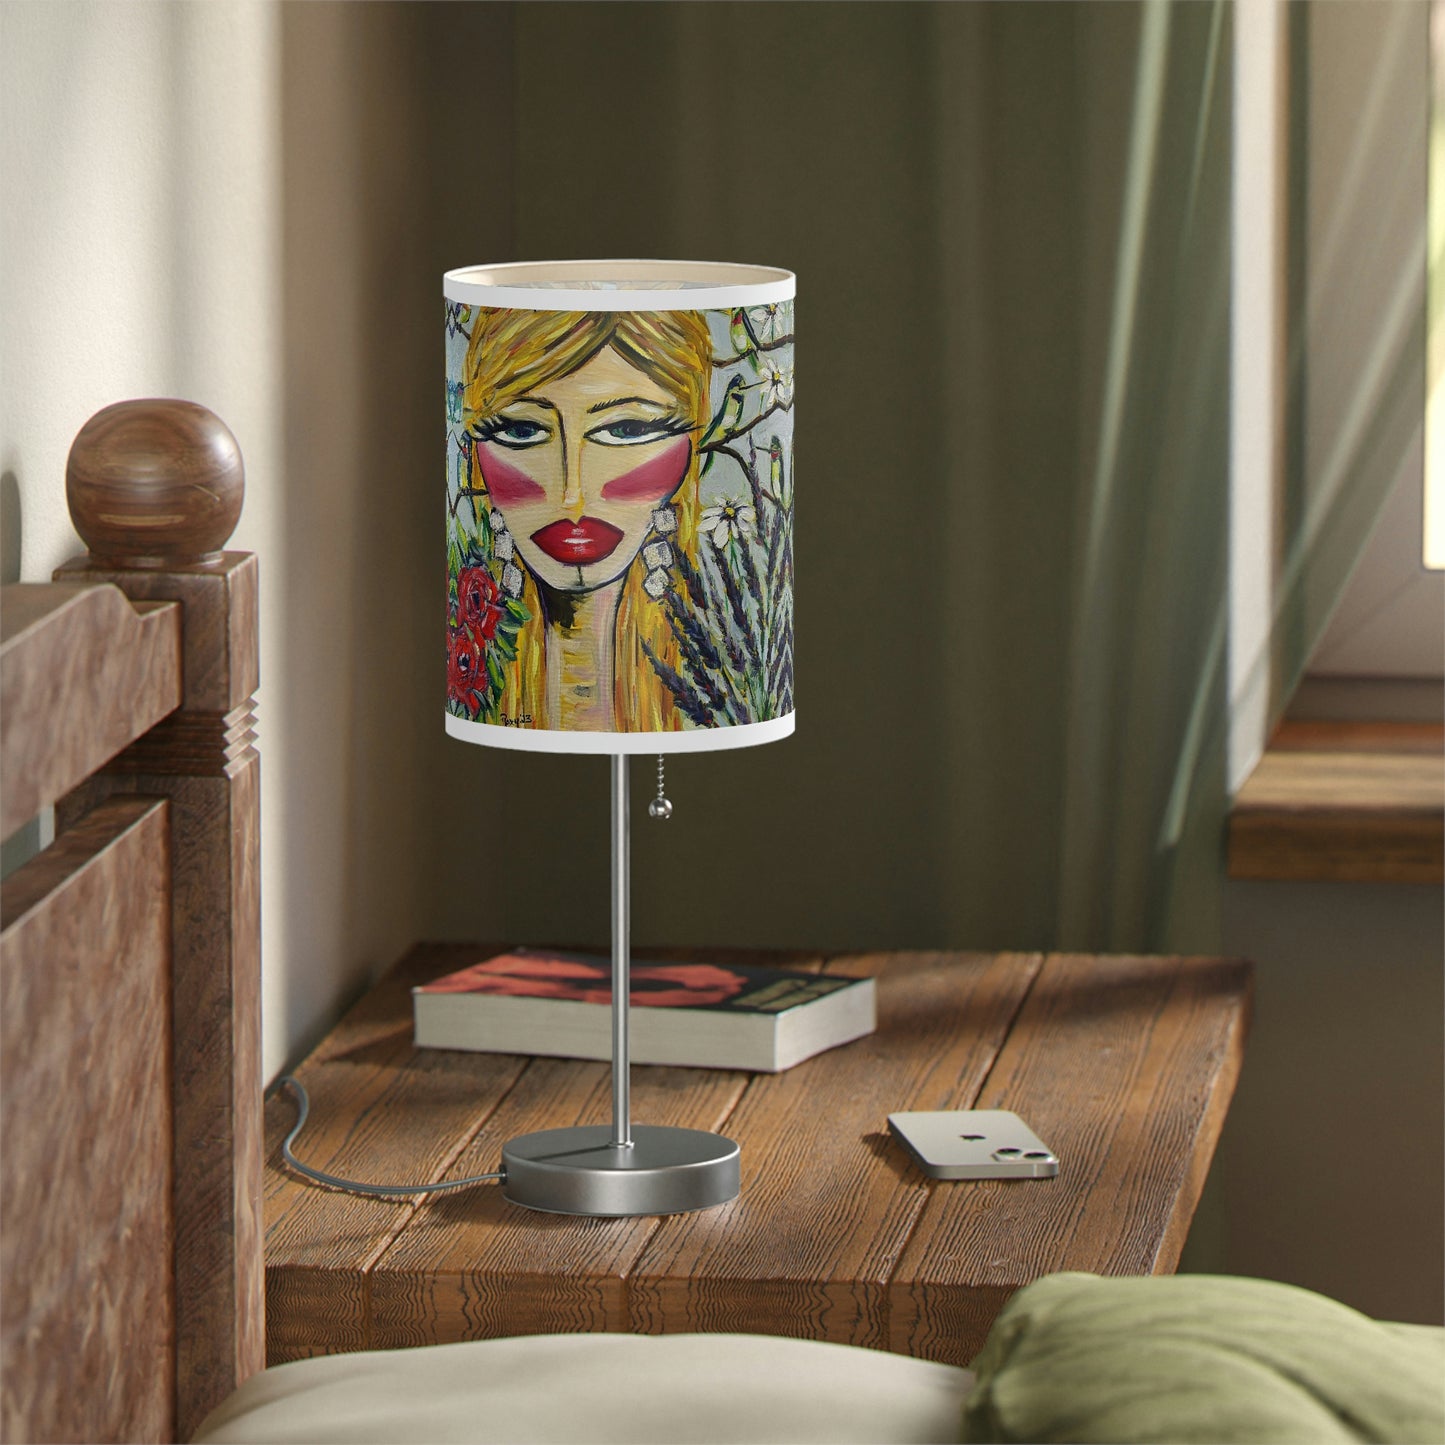 Hummingbird Lady Lamp on a Stand, US|CA plug